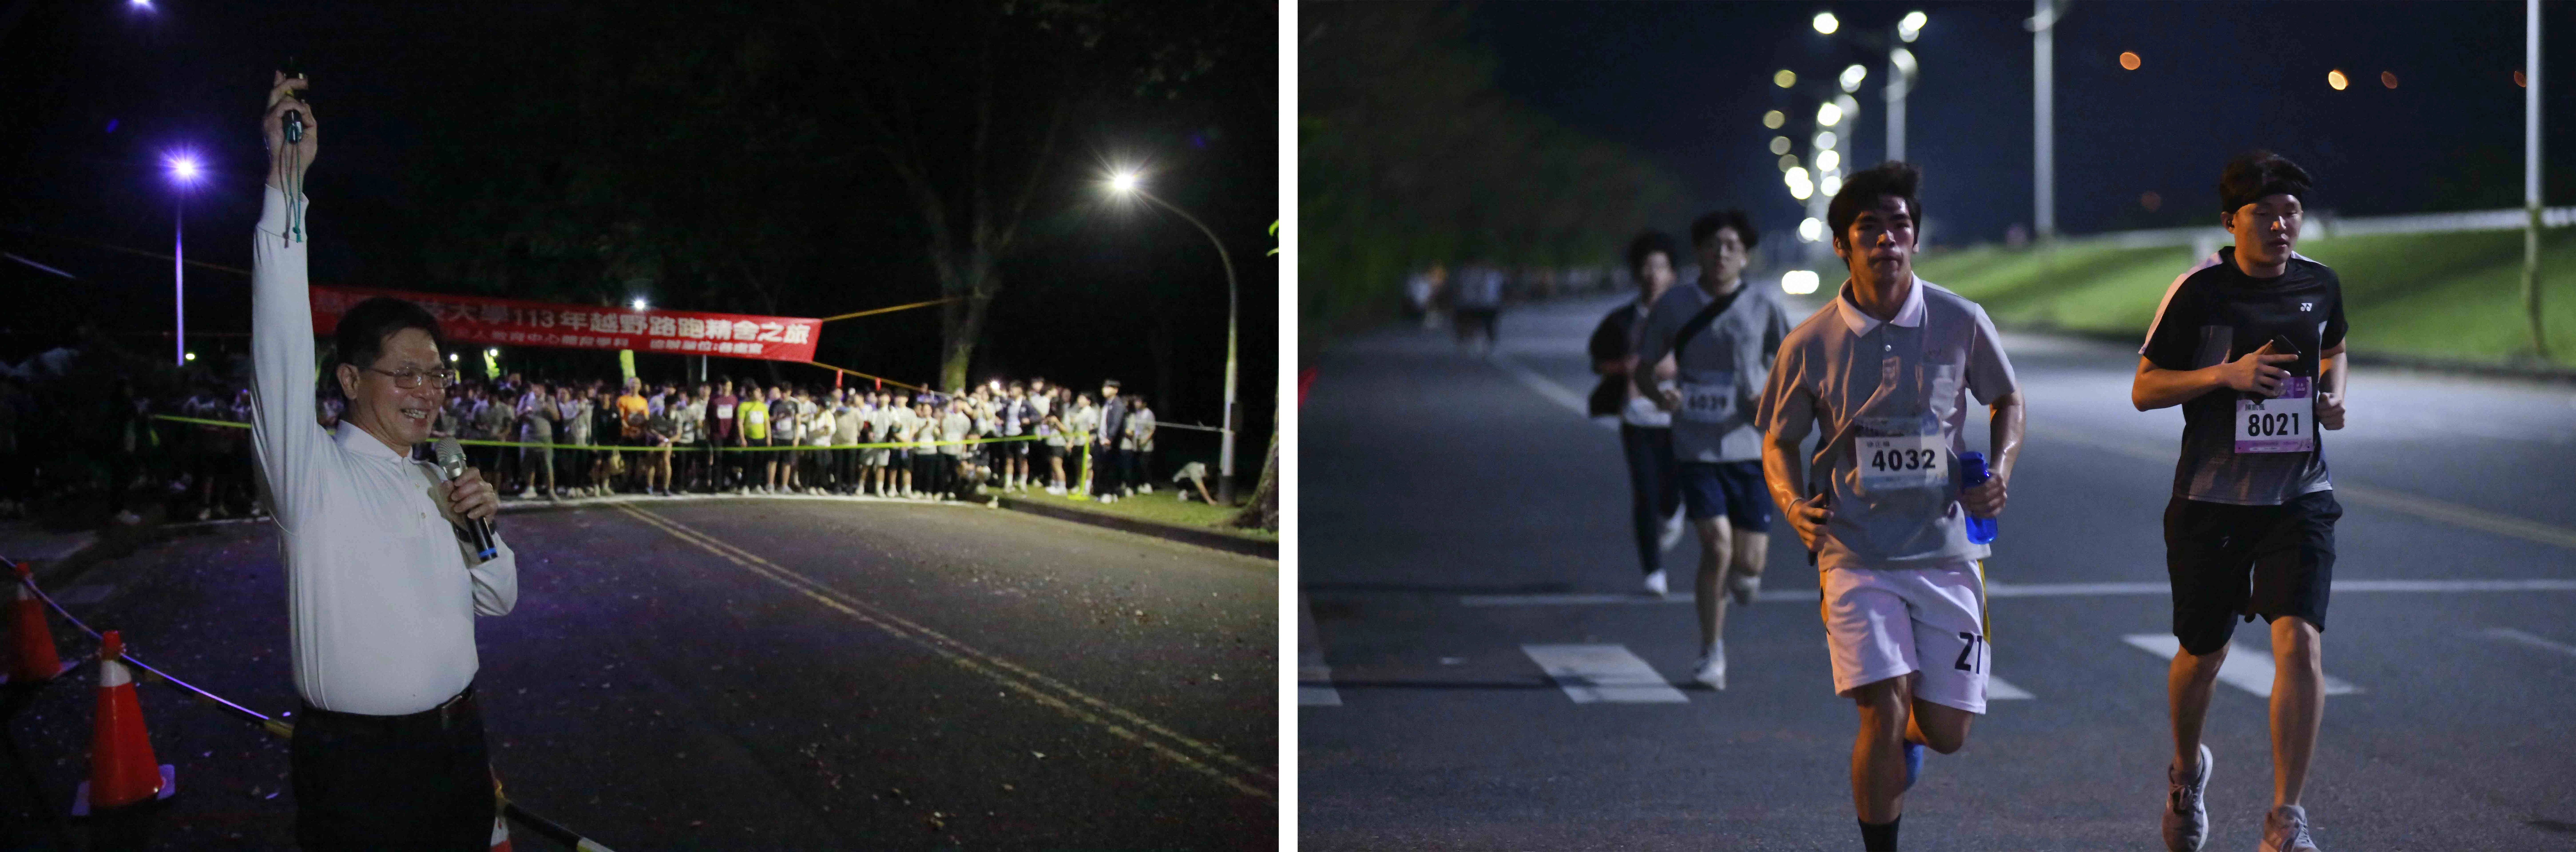 （圖左）慈濟科技大學舉辦113年10公里路跑。（圖右）天還沒亮，學生奮力向前跑！